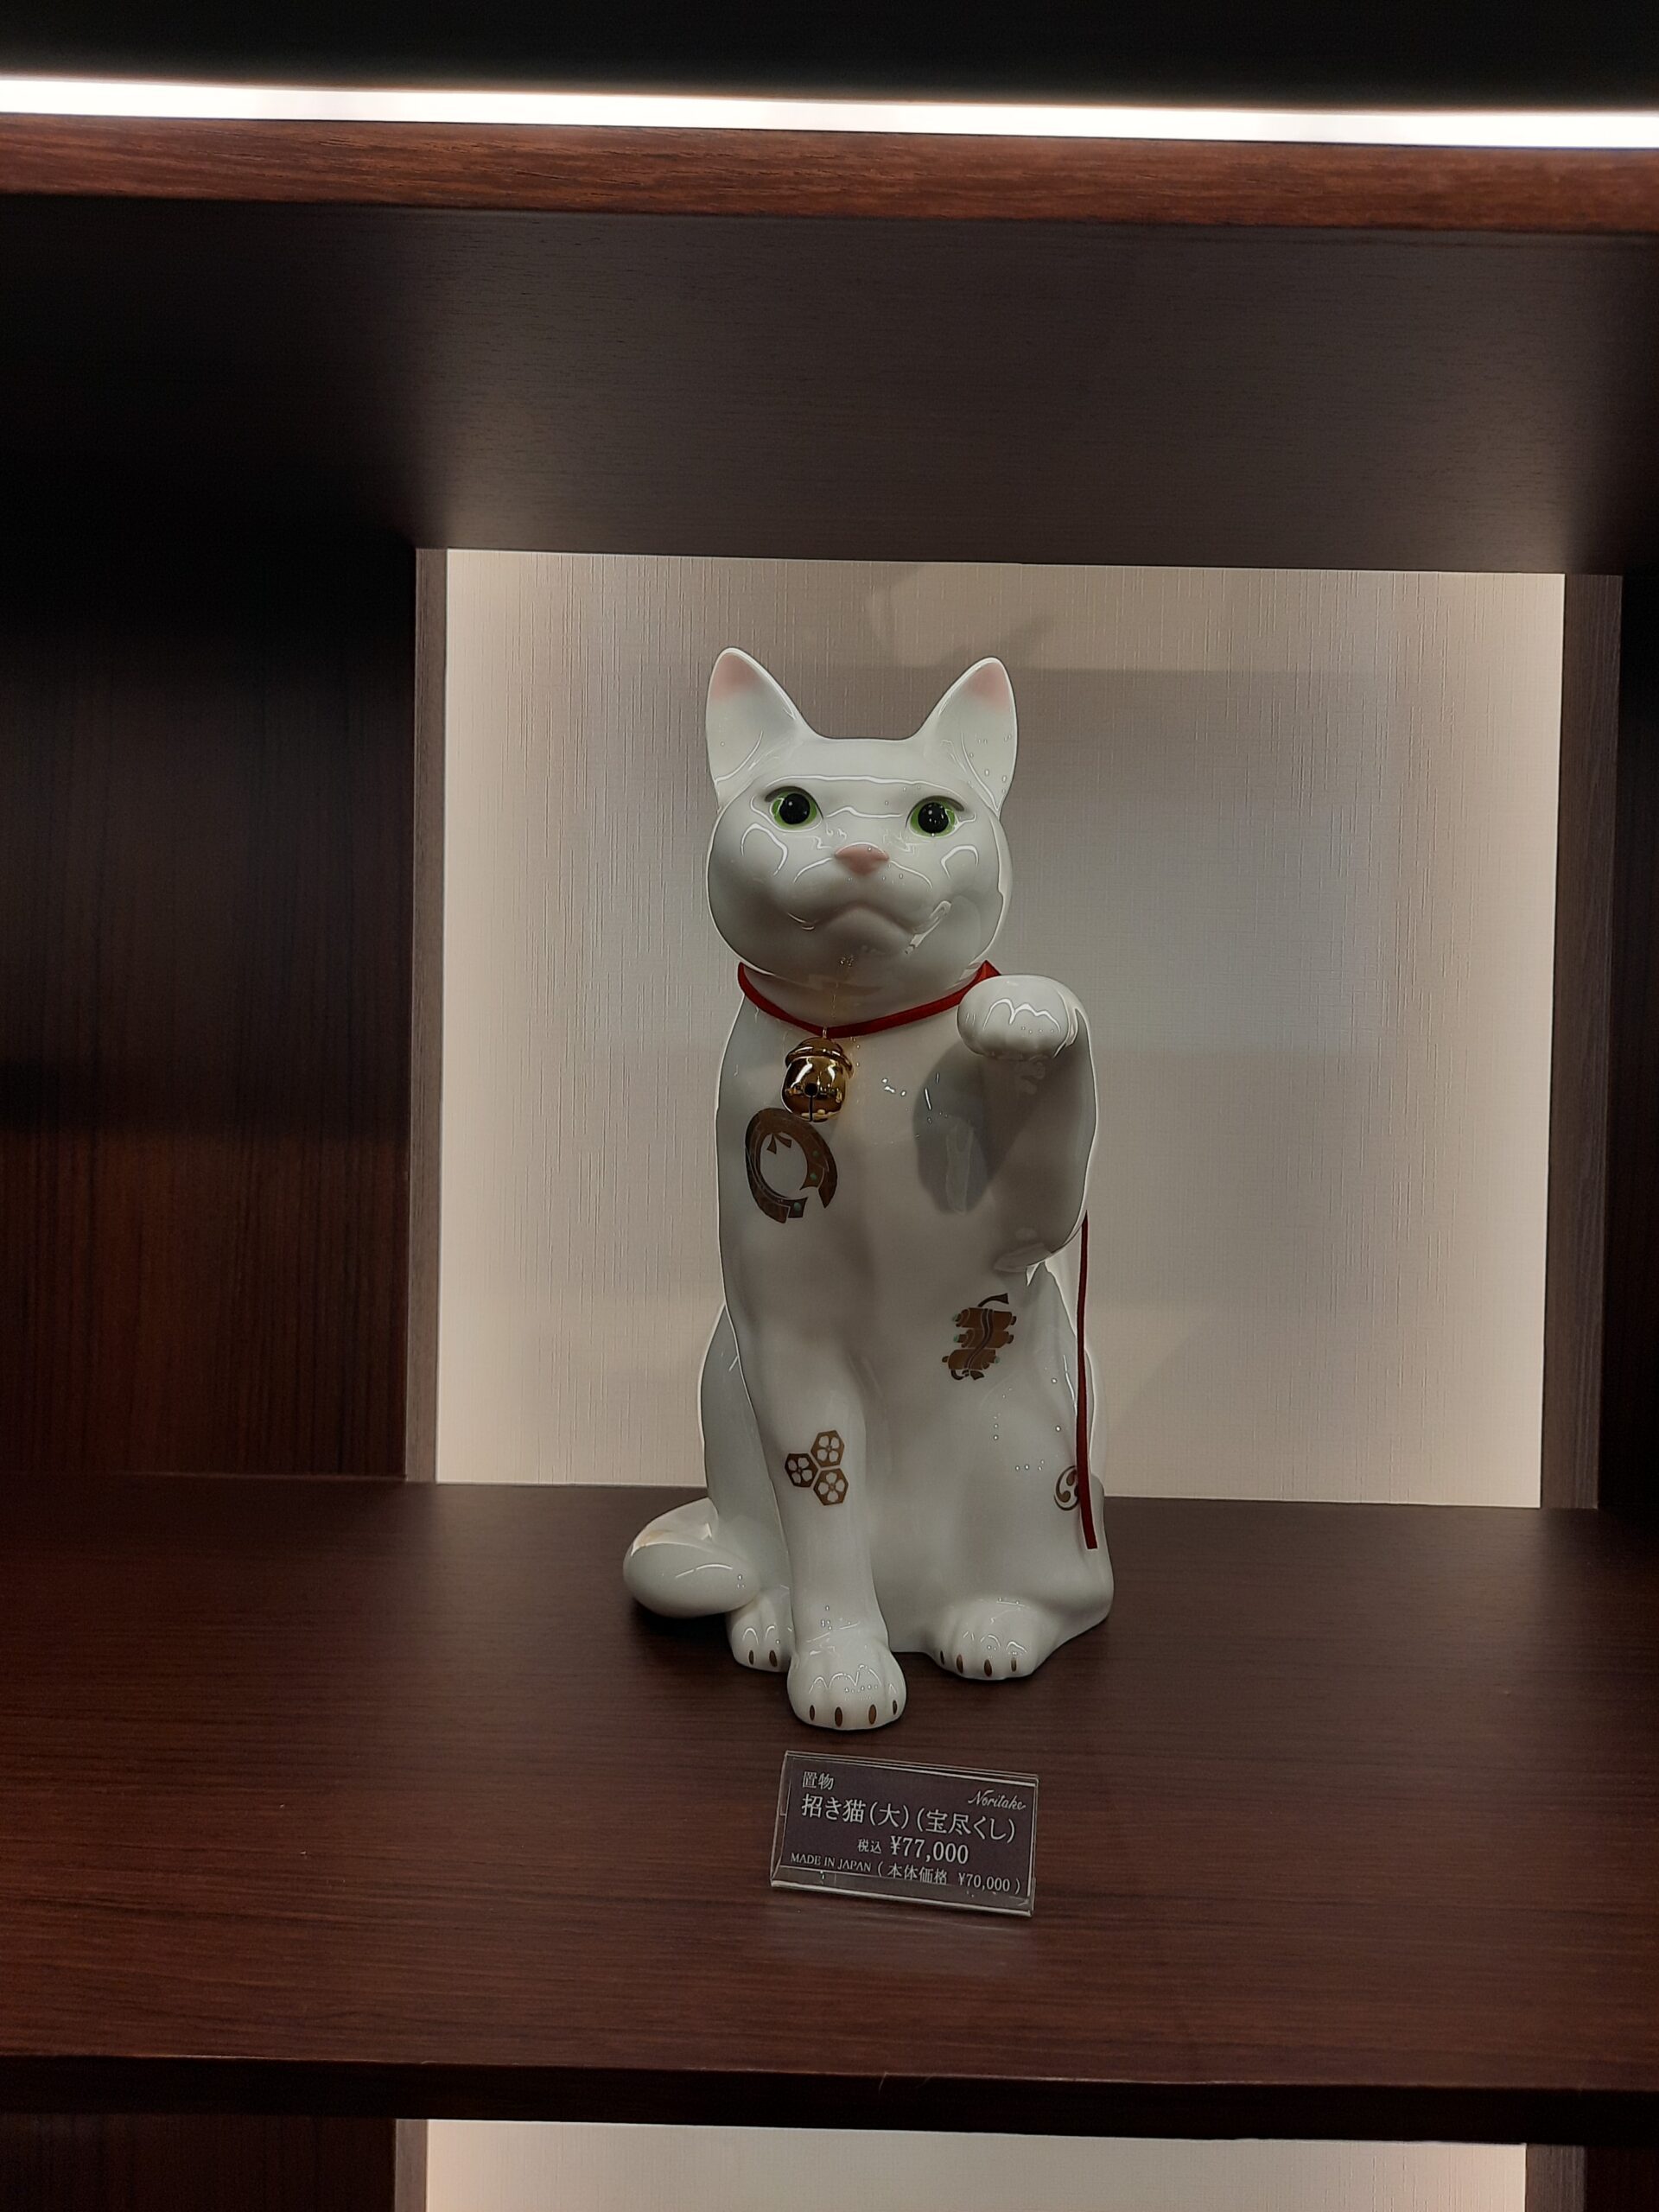 cat, figurine, decor, bell, necklace